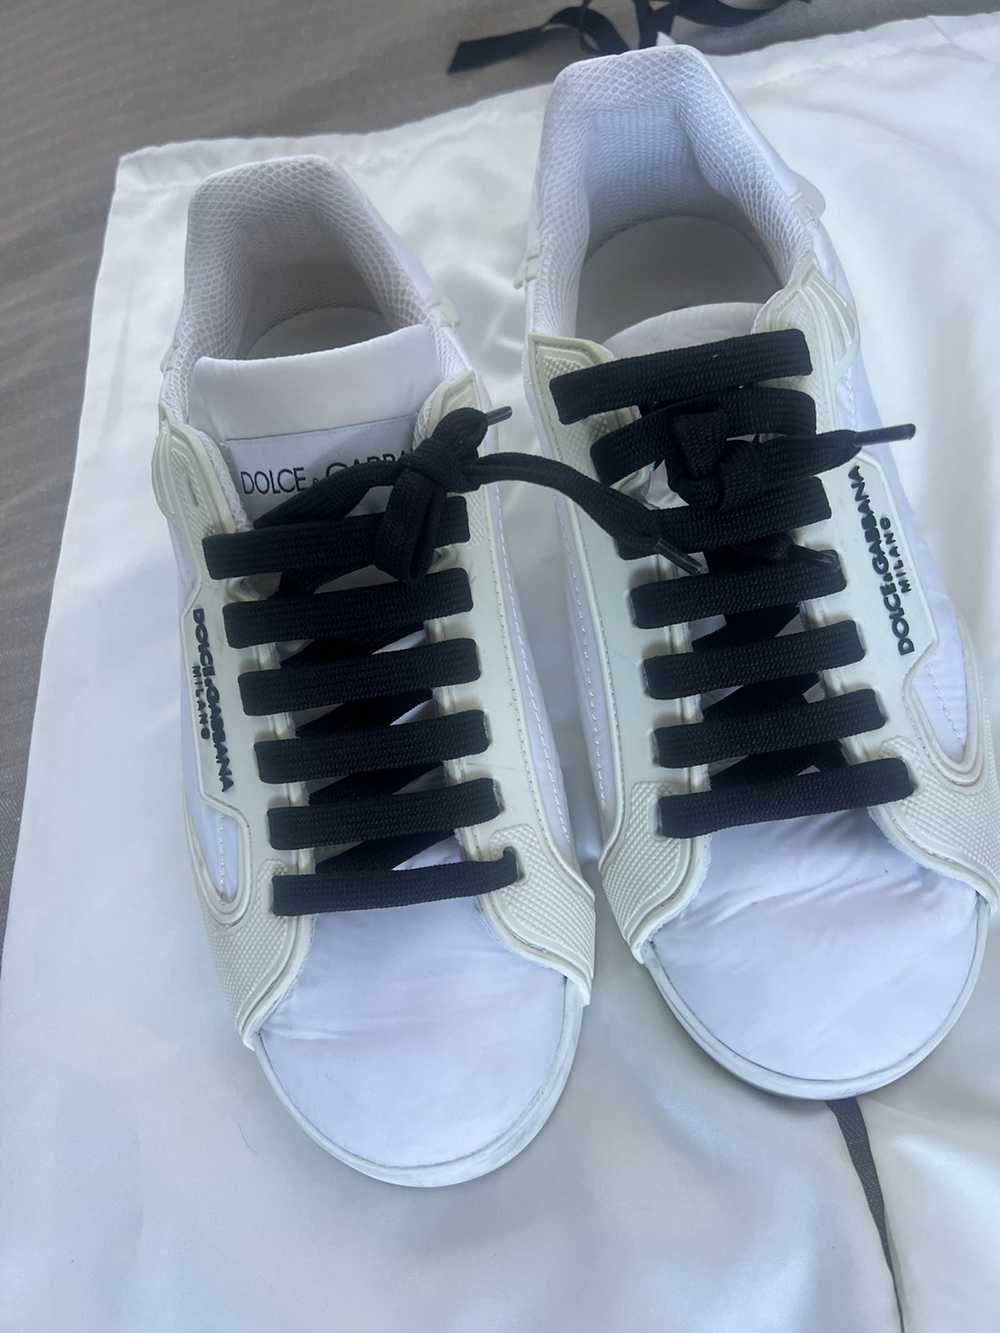 Dolce & Gabbana Dolce&Gabbana white shoes - image 2